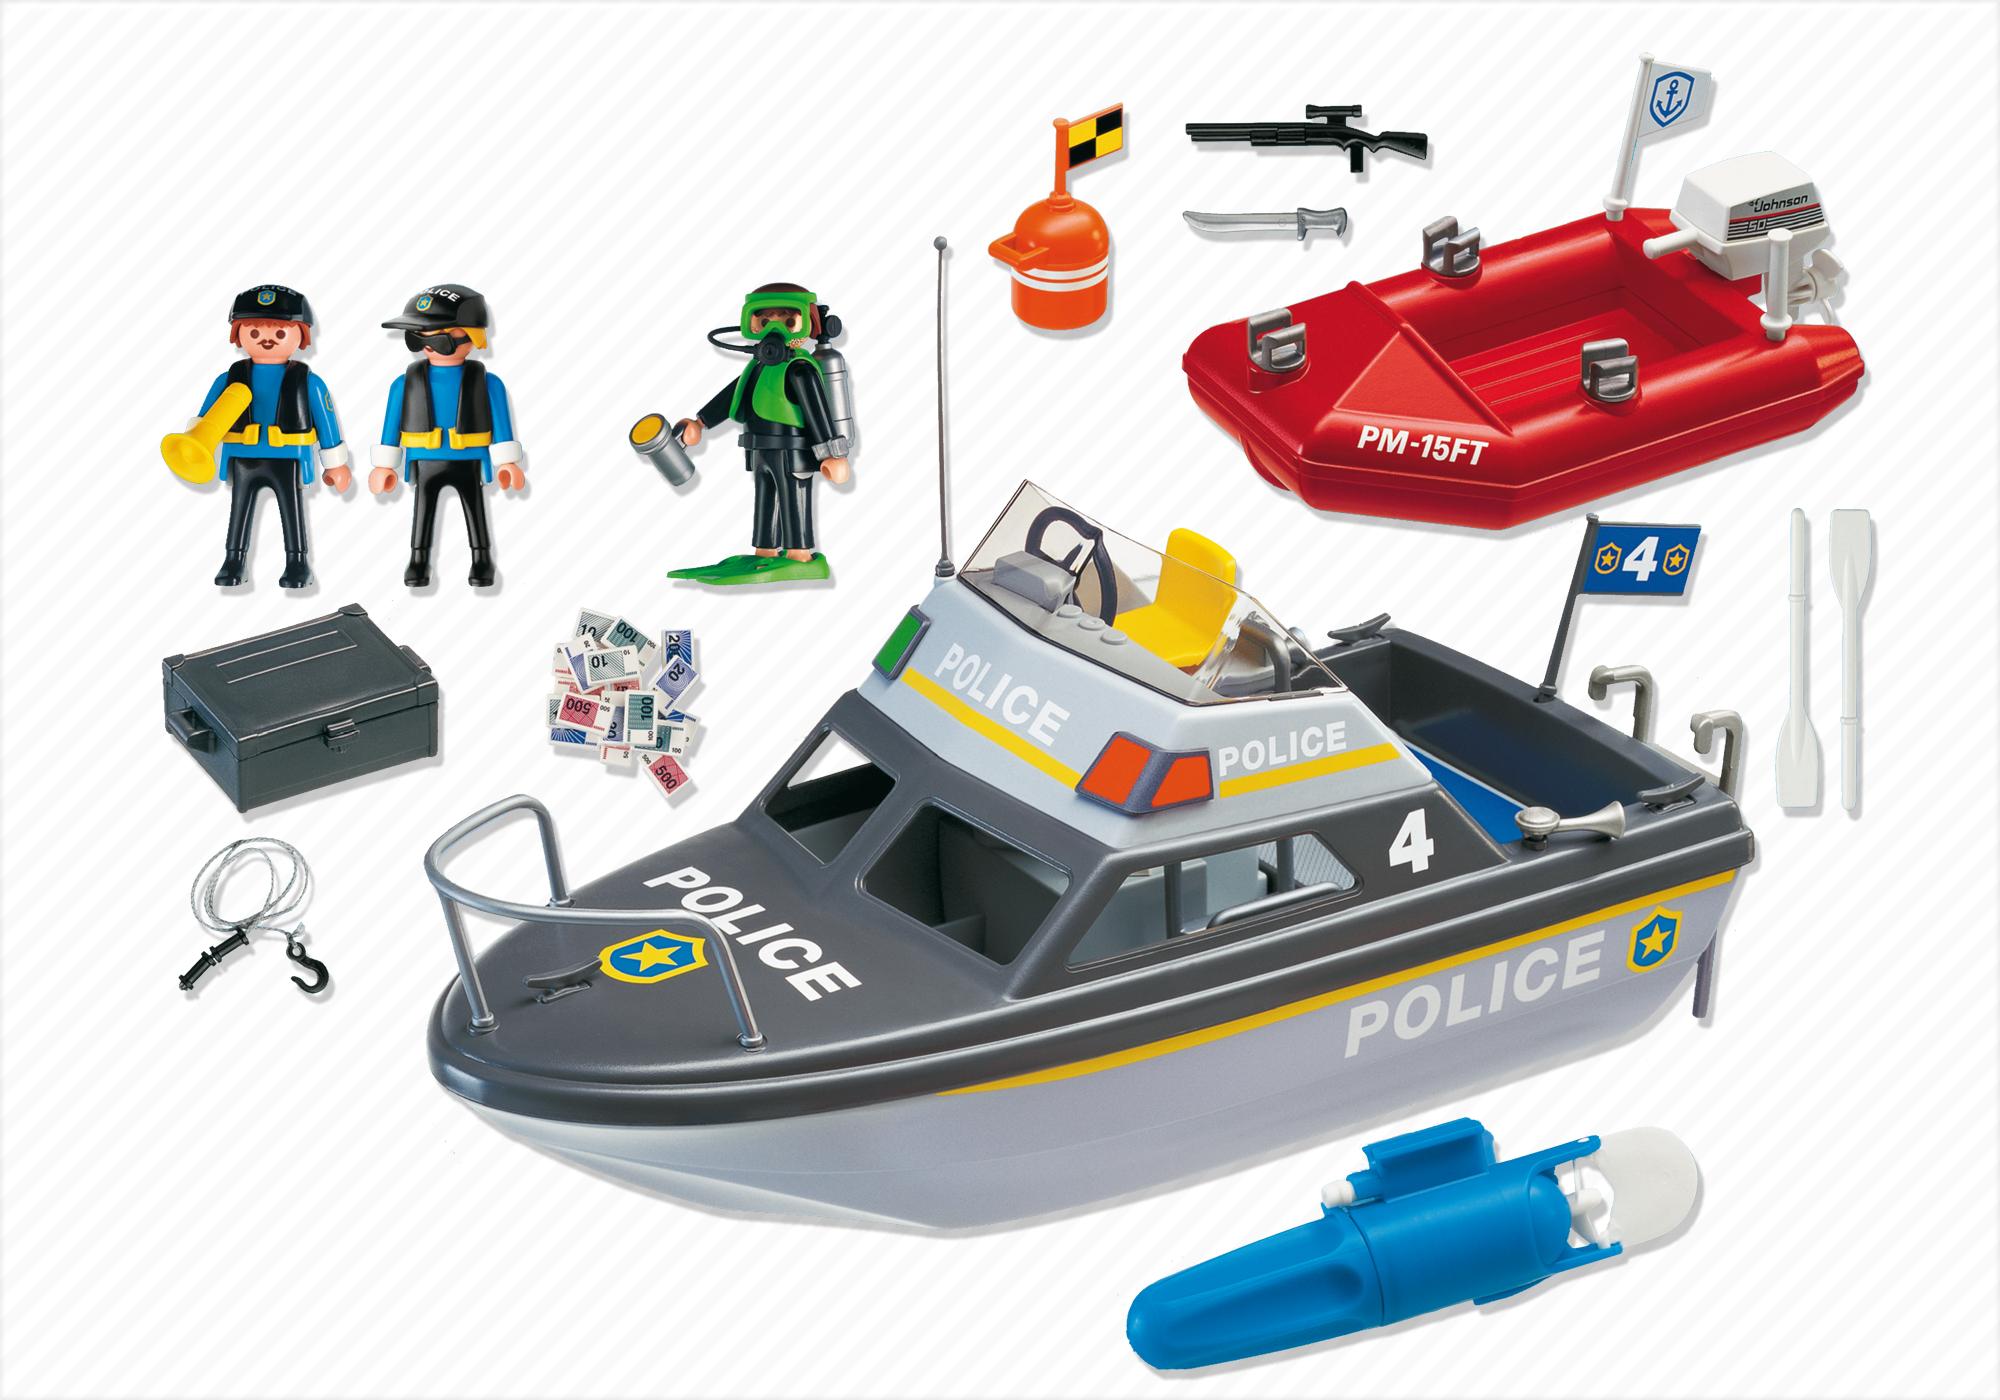 bateau de police playmobil